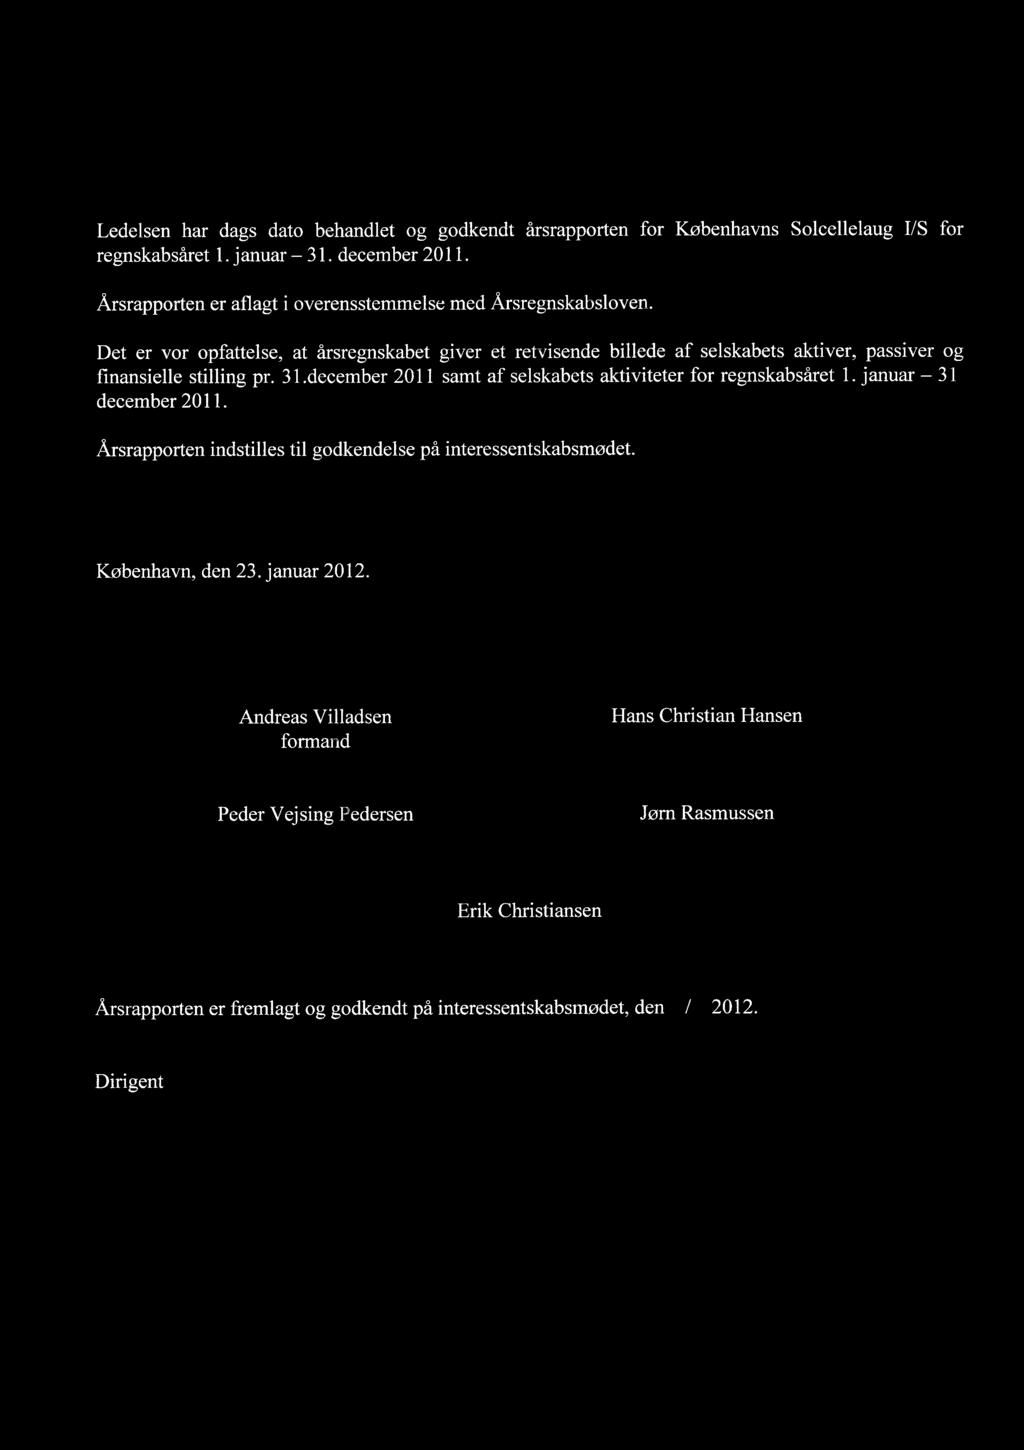 REVISION LEDELSESPATEGNING Ledelsen har dags dato behandlet og godkendt Ærsrapporten for Kobenhavns Solcellelaug I/S for regnskabsæret 1. januar - 31. december 2011.